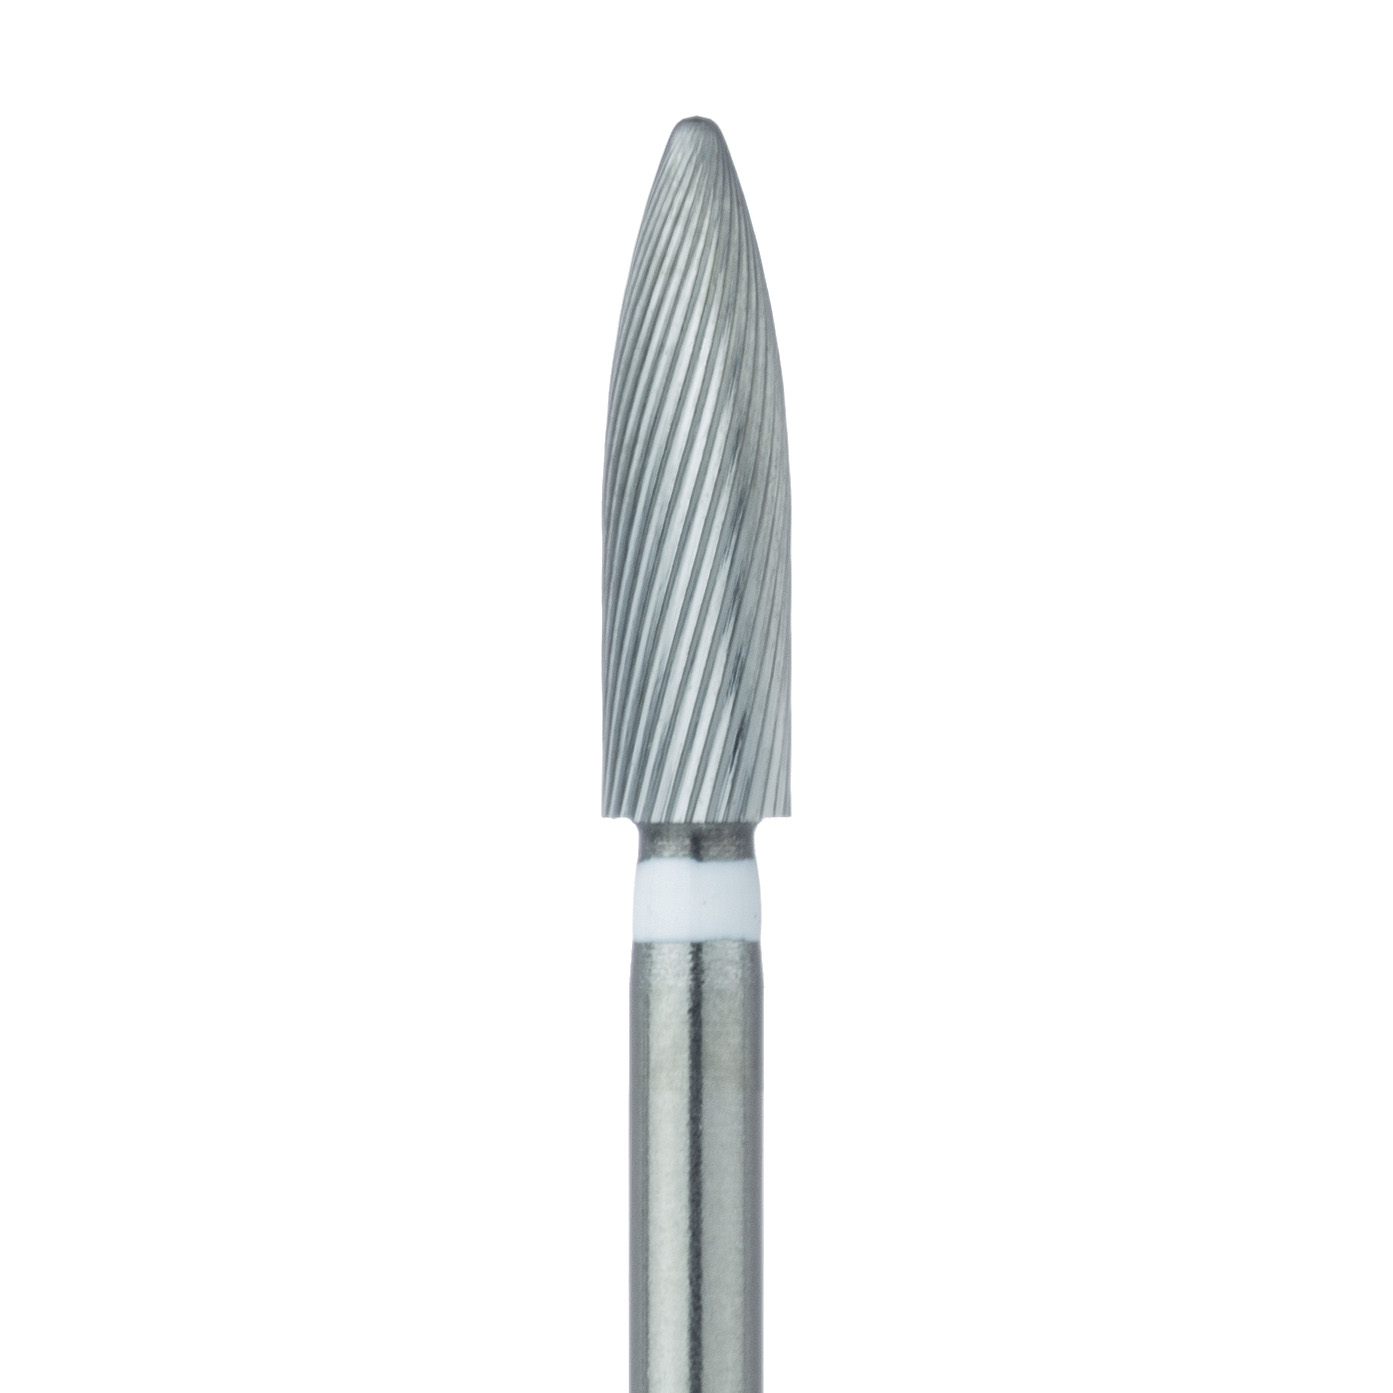 HM48LU-023-SU Trimming & Finishing Carbide Bur, Ultra Fine, Flame, 2.3mm Ø, SU (FGXXL)